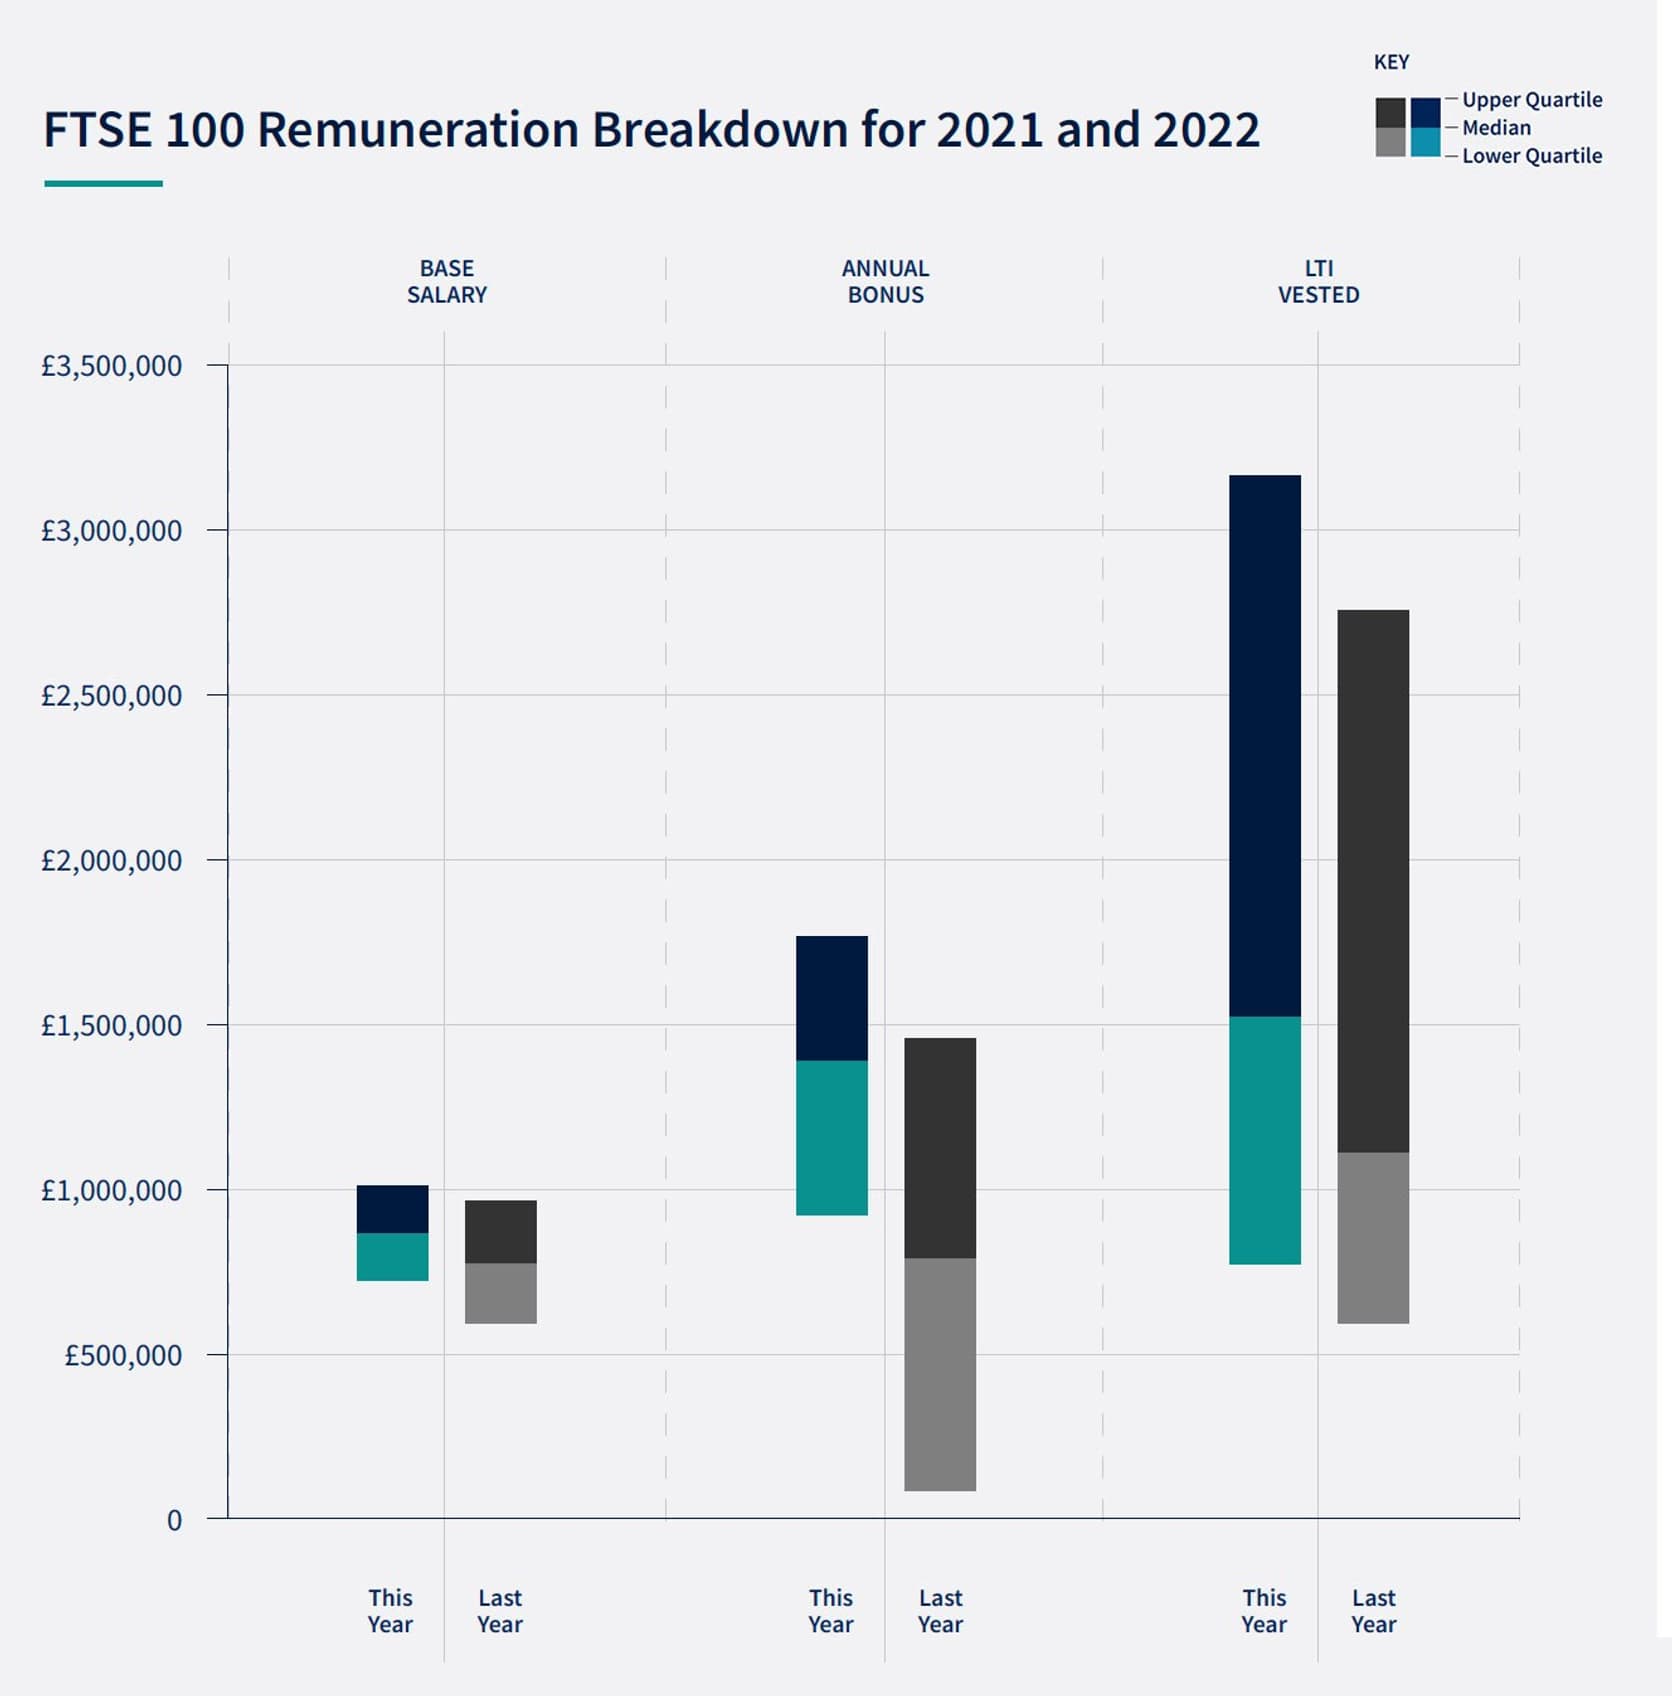 FTSE 100 Remuneration Breakdown